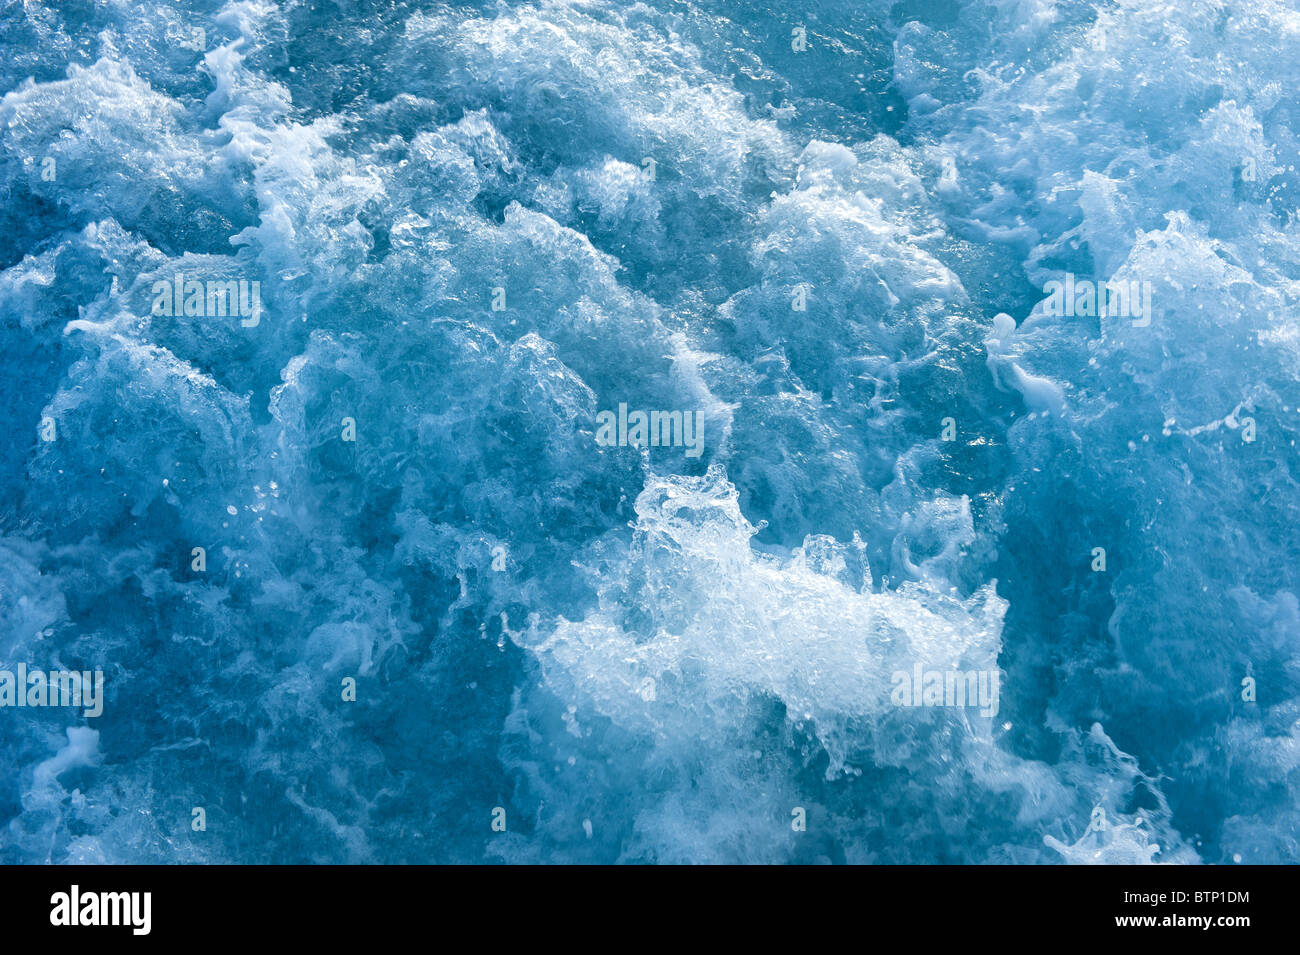 Le barattage de l'eau dans l'océan bleu montre beaucoup de turbulence et d'éclaboussures. Bon pour l'image d'arrière-plan. Banque D'Images